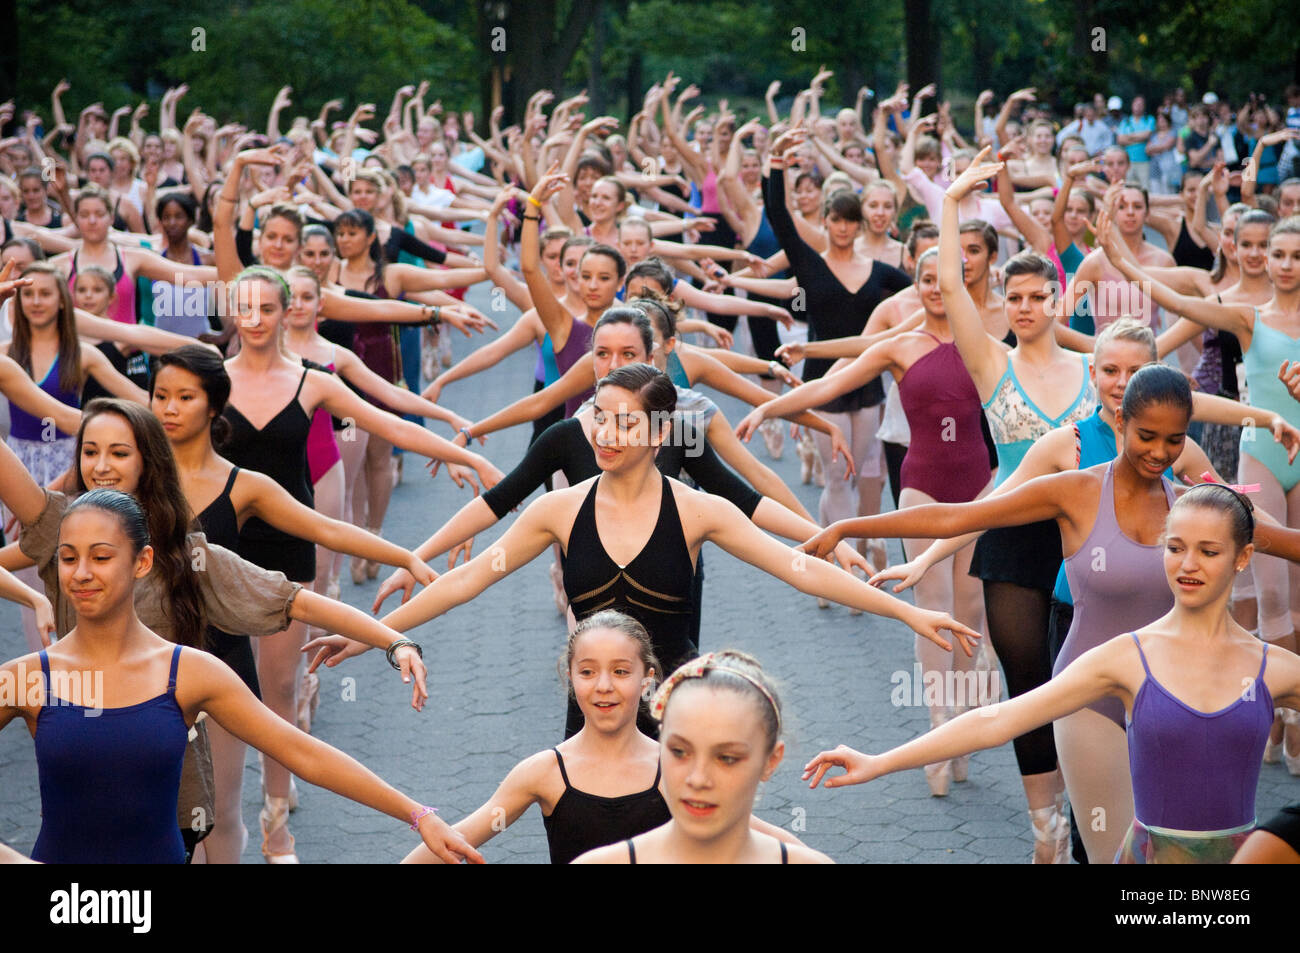 Des centaines de ballerines se rassembler dans Central Park à New York pour briser le record mondial Guinness de ballerines en pointe Banque D'Images